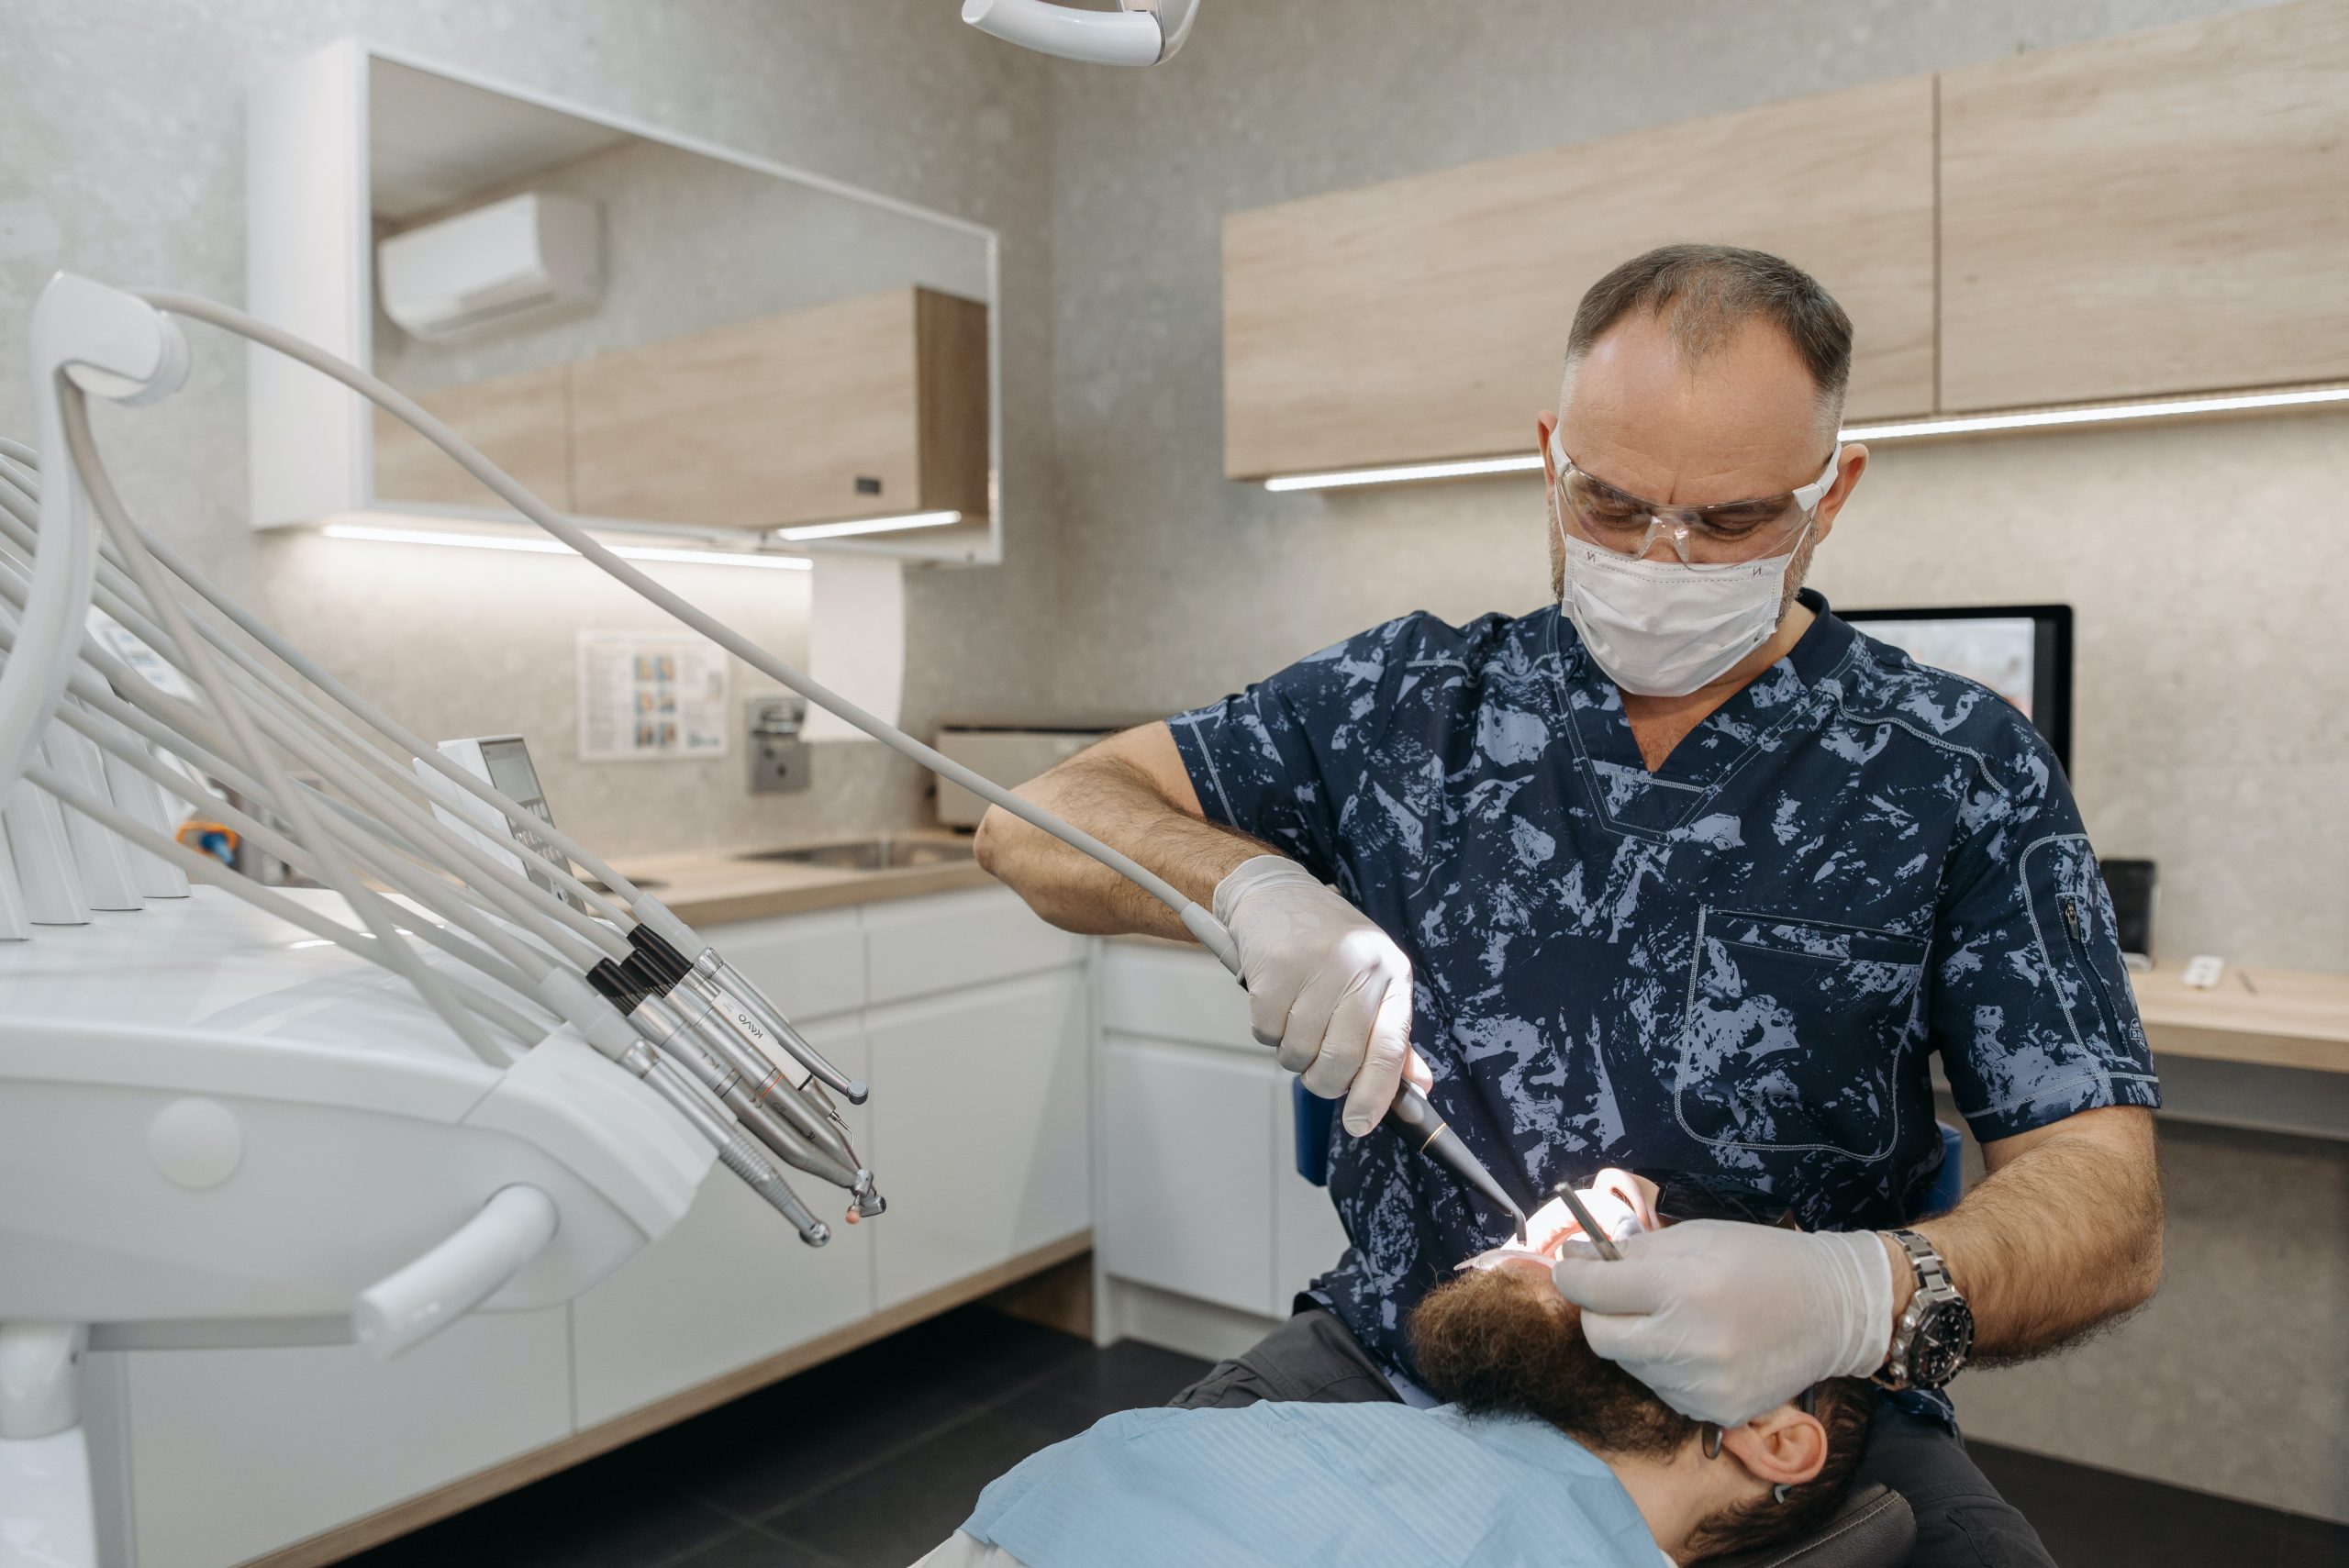 Implantologia: Impianti dentali e dolore, come superare la paura